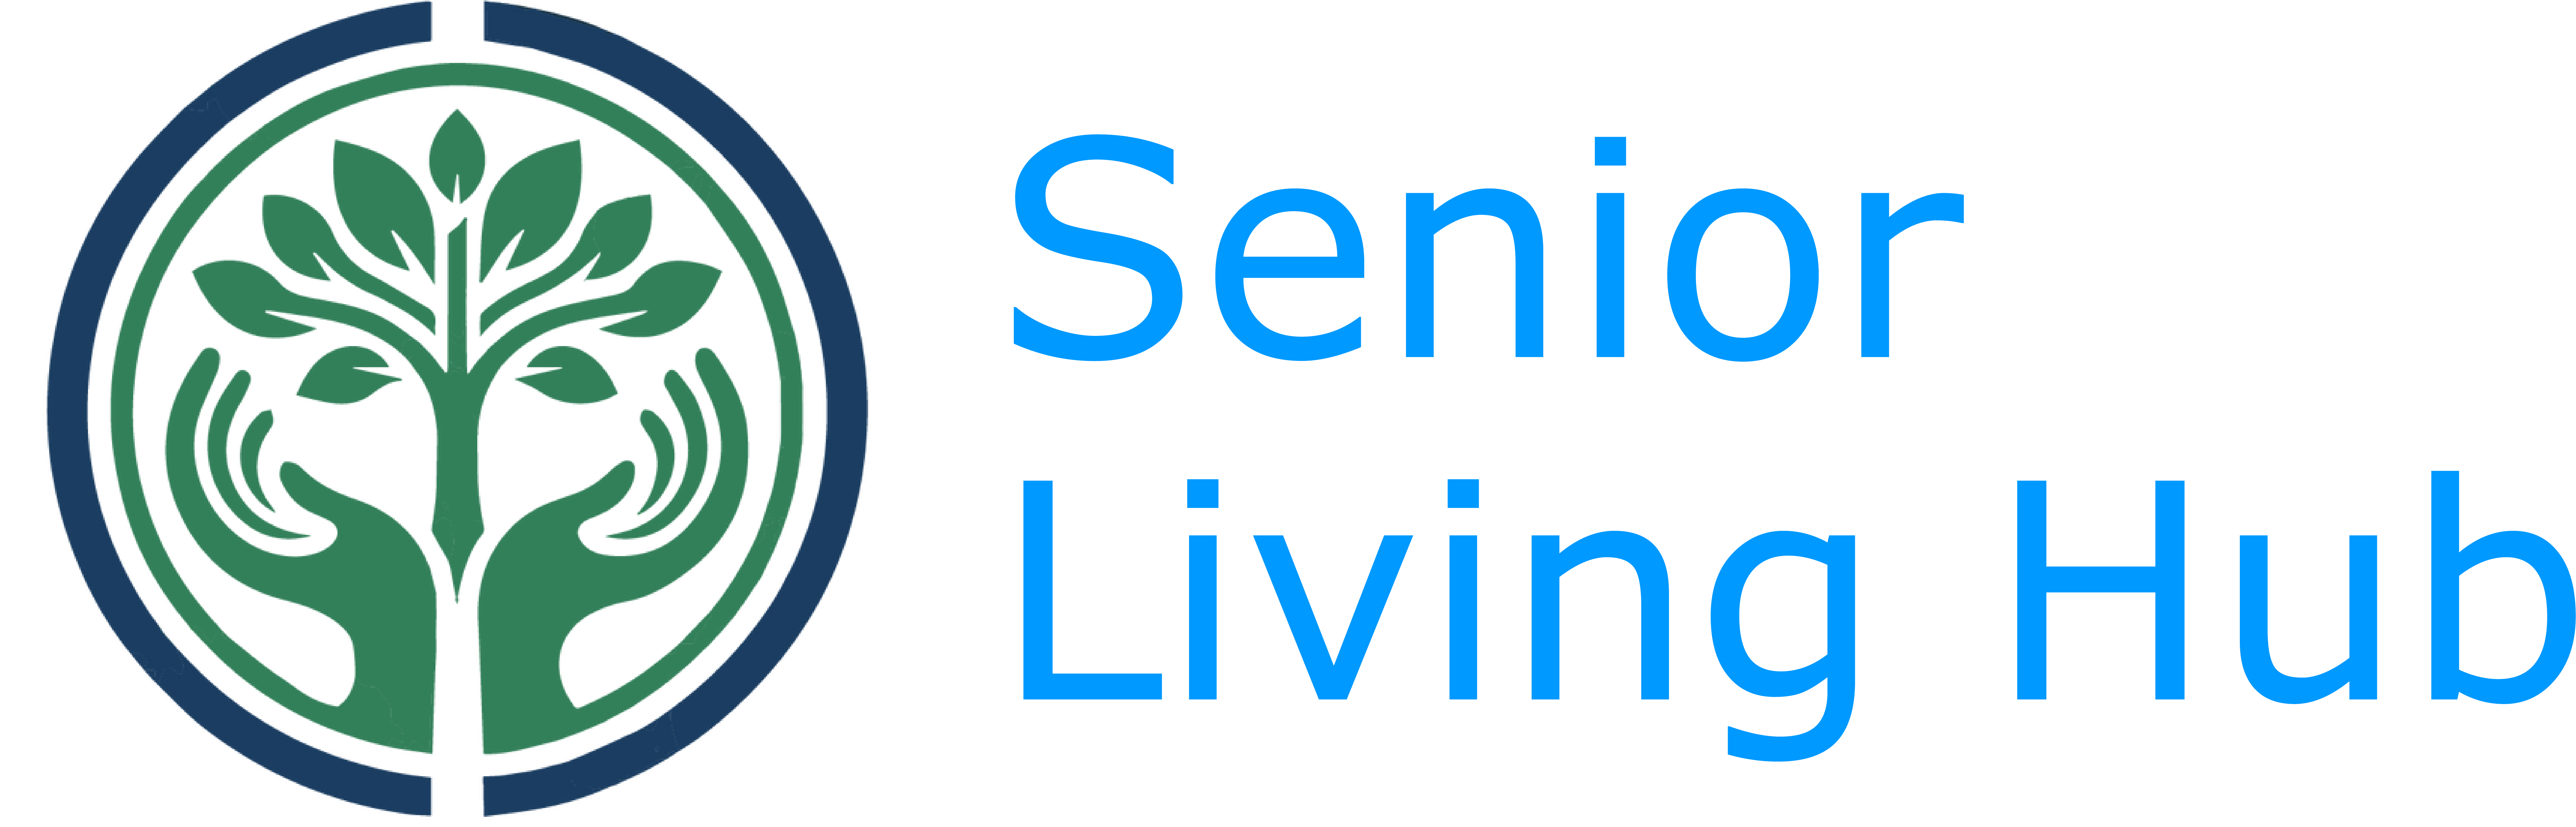 cropped-cropped-Senior-Living-Hub-Logo-Regular.png